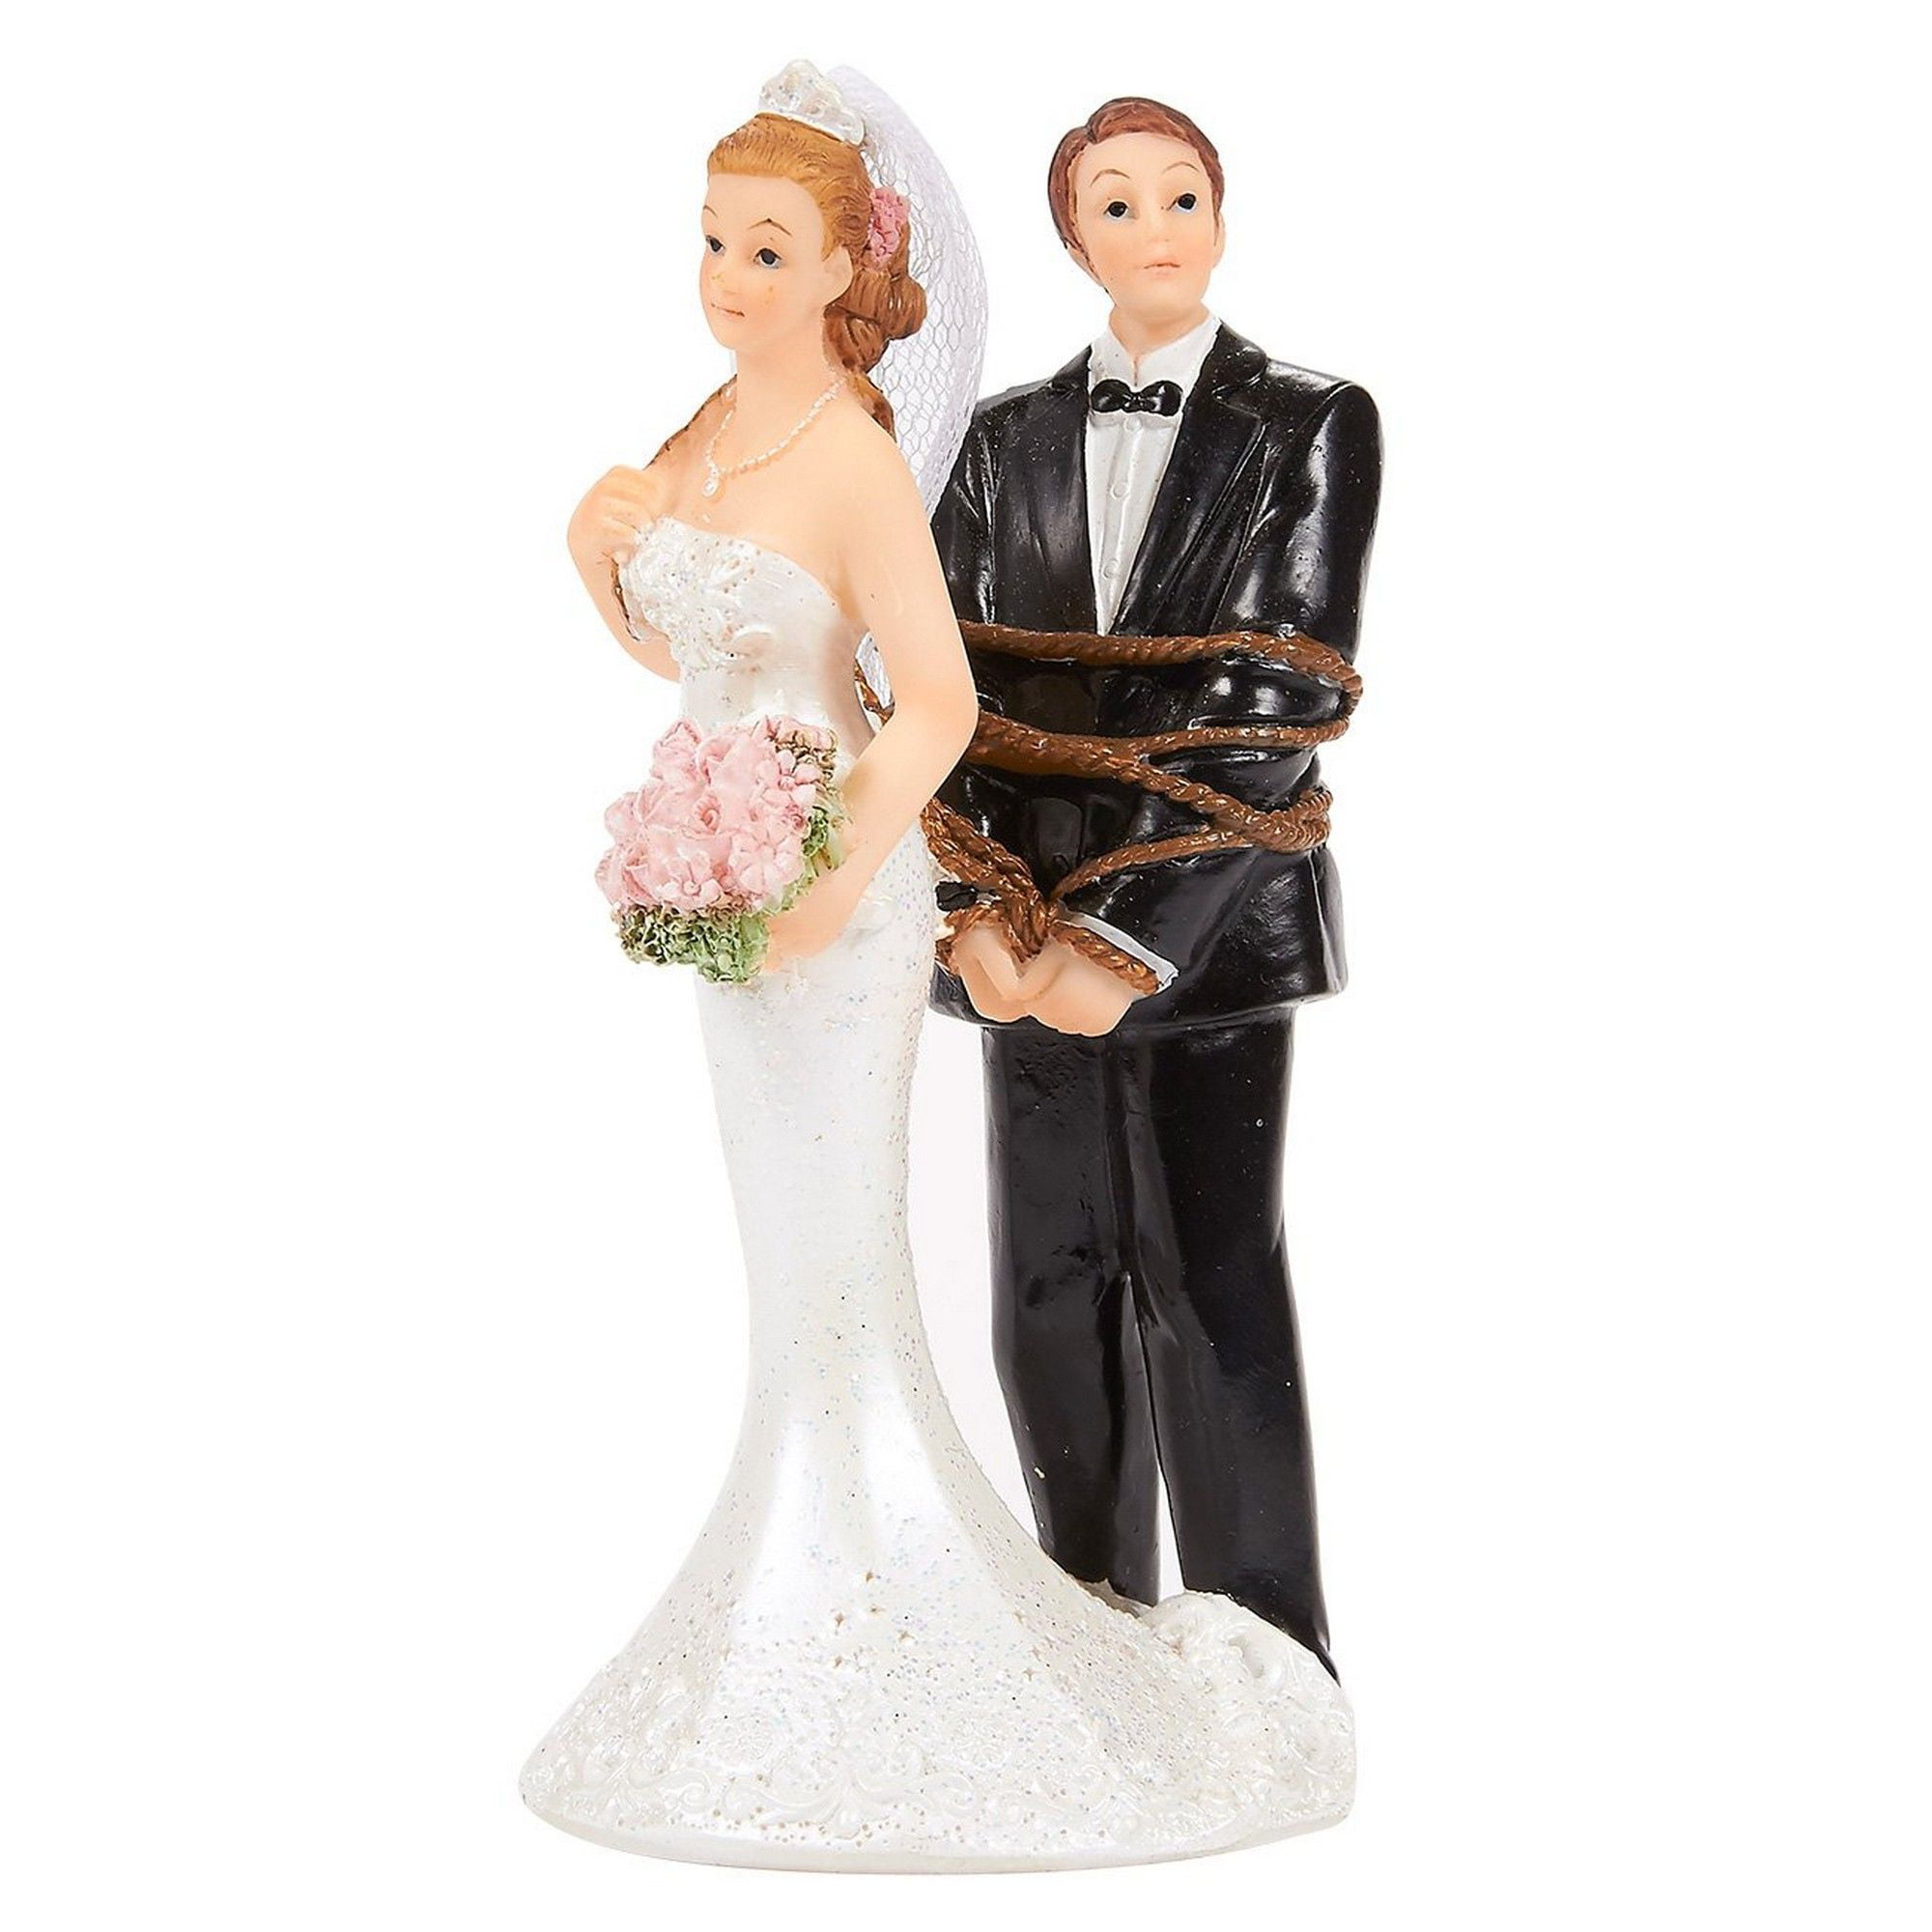 Juvale Wedding Cake Topper Bride Tied Up Groom Figurines Fun